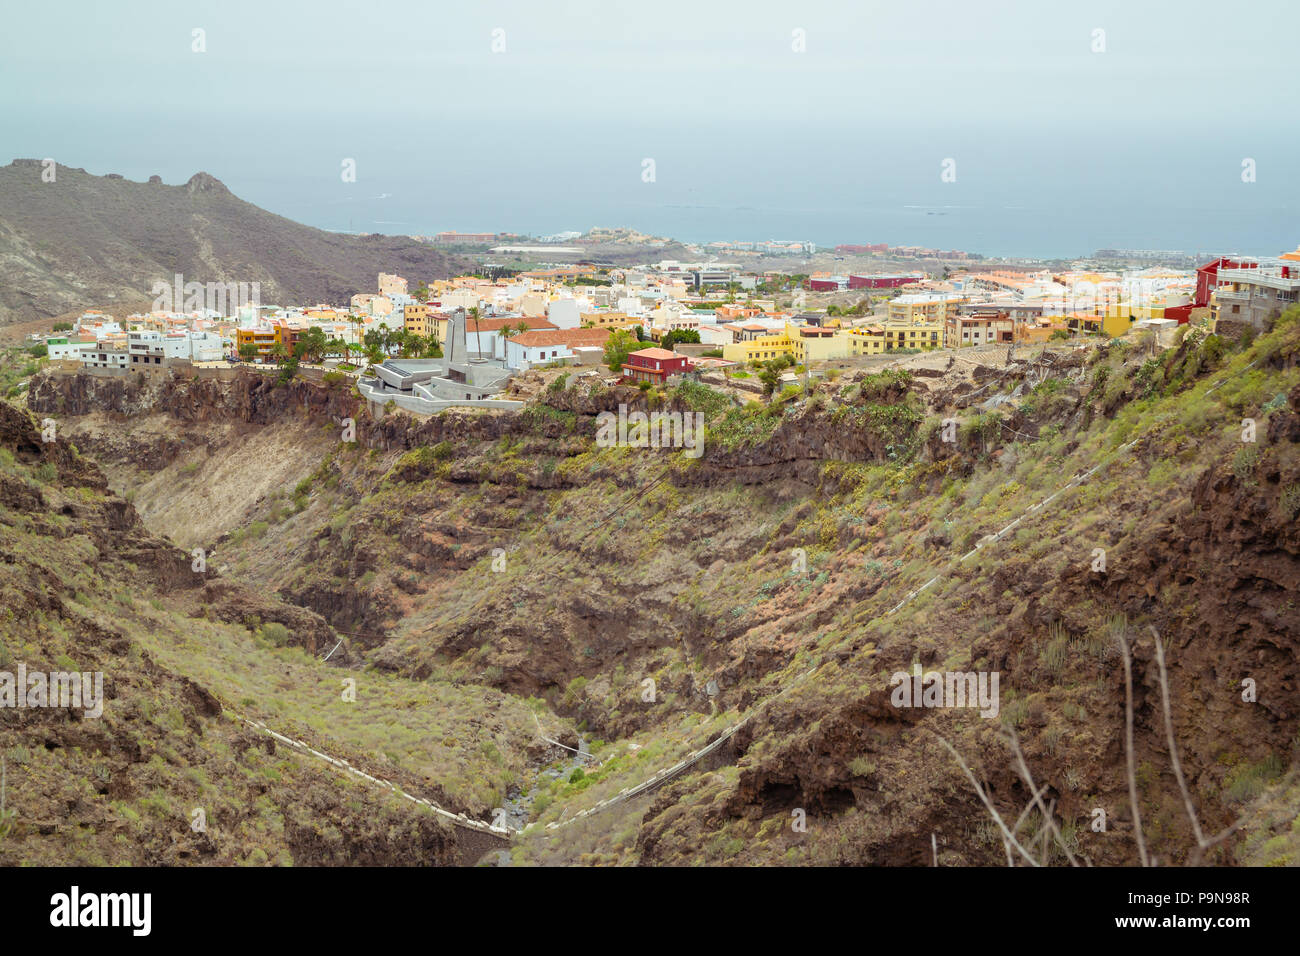 Paysage des Canaries à Ténérife. La ville d'Adeje de maisons construites au cours de la vallée escarpée de Barranco del Infierno en face de l'océan Atlantique. Aussi Banque D'Images